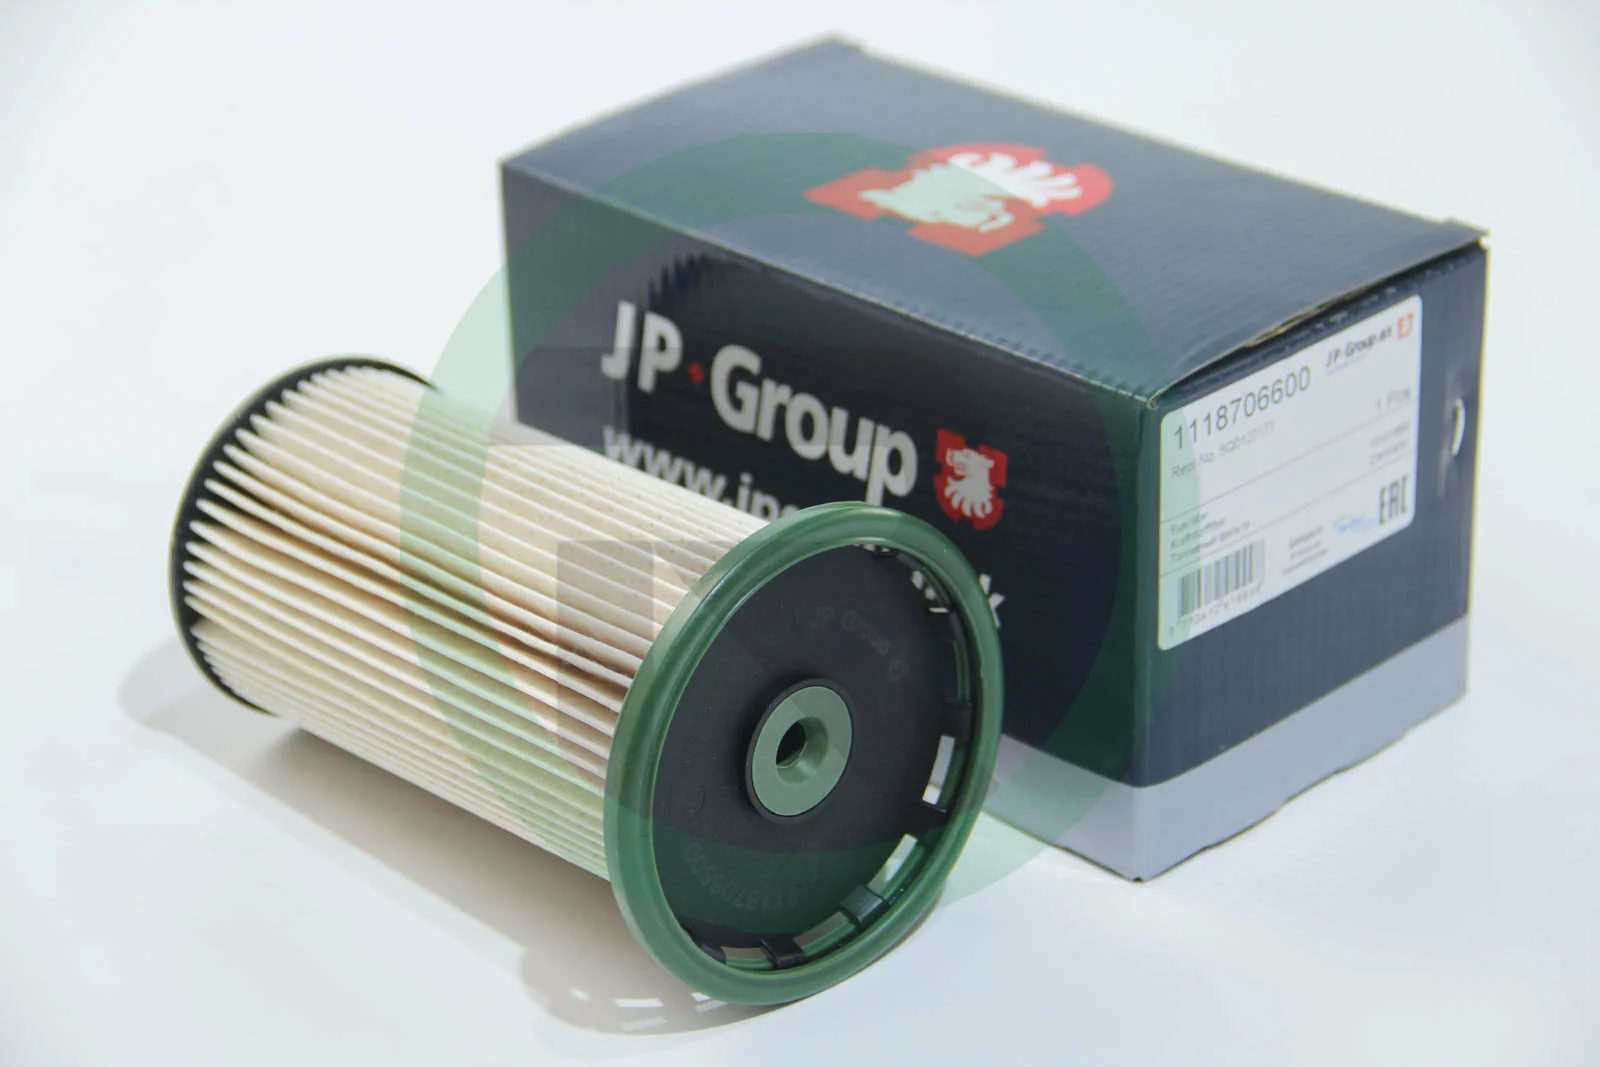 Топливный фильтр на Шкода Октавия А7  JP Group 1118706600.